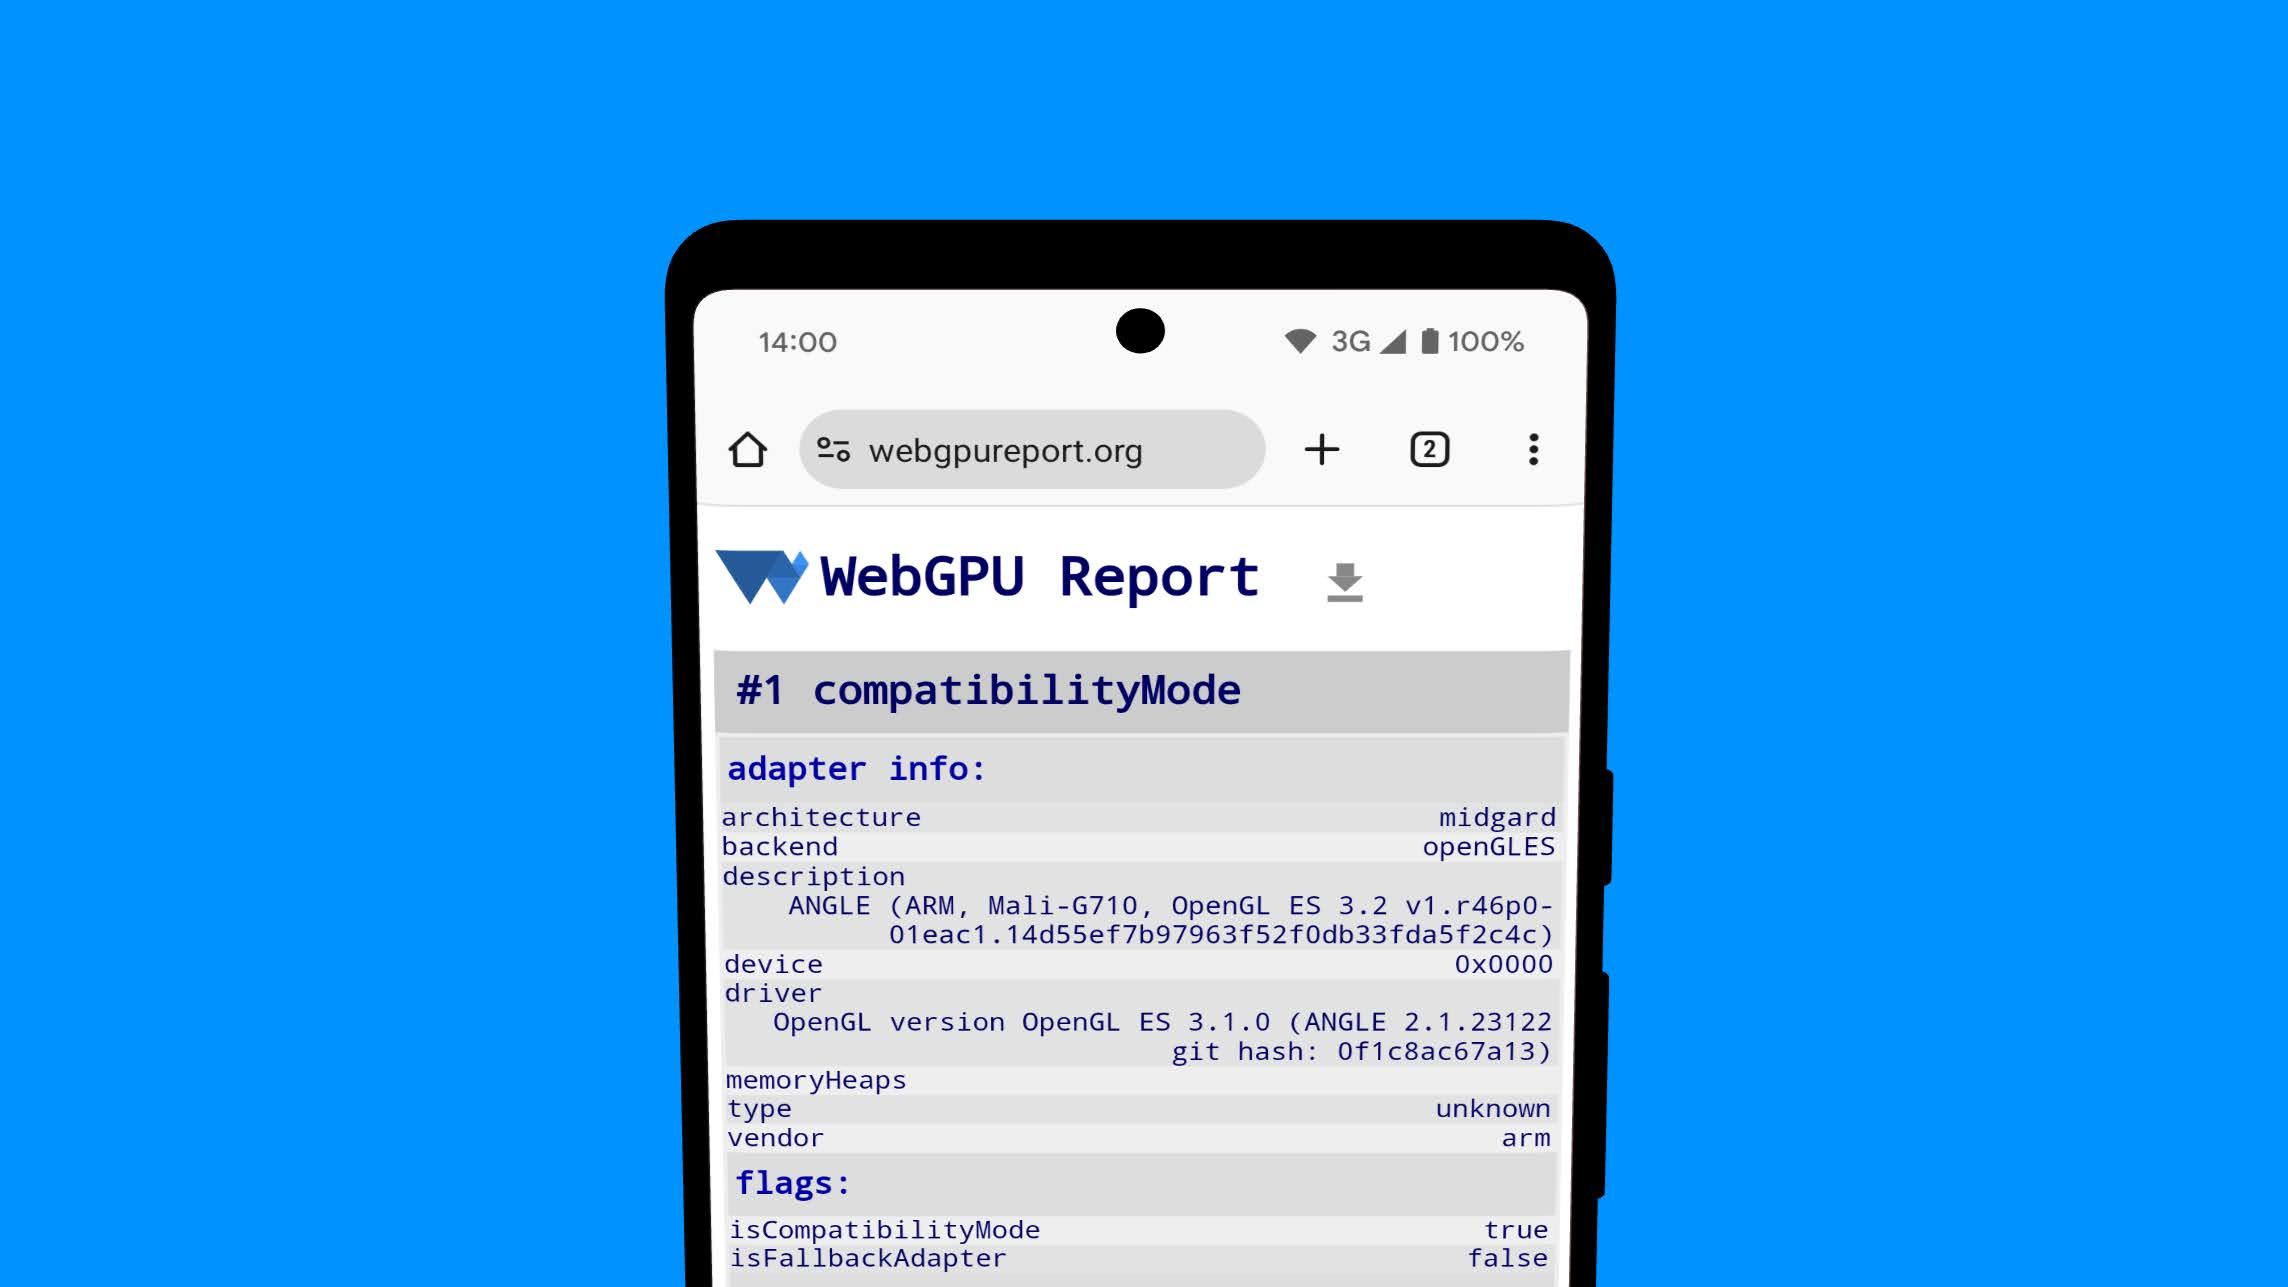 WebGPU के रिपोर्ट पेज पर, Android डिवाइस पर OpenGL ES बैकएंड से मिली जीपीयू अडैप्टर की जानकारी दिखाई गई है.